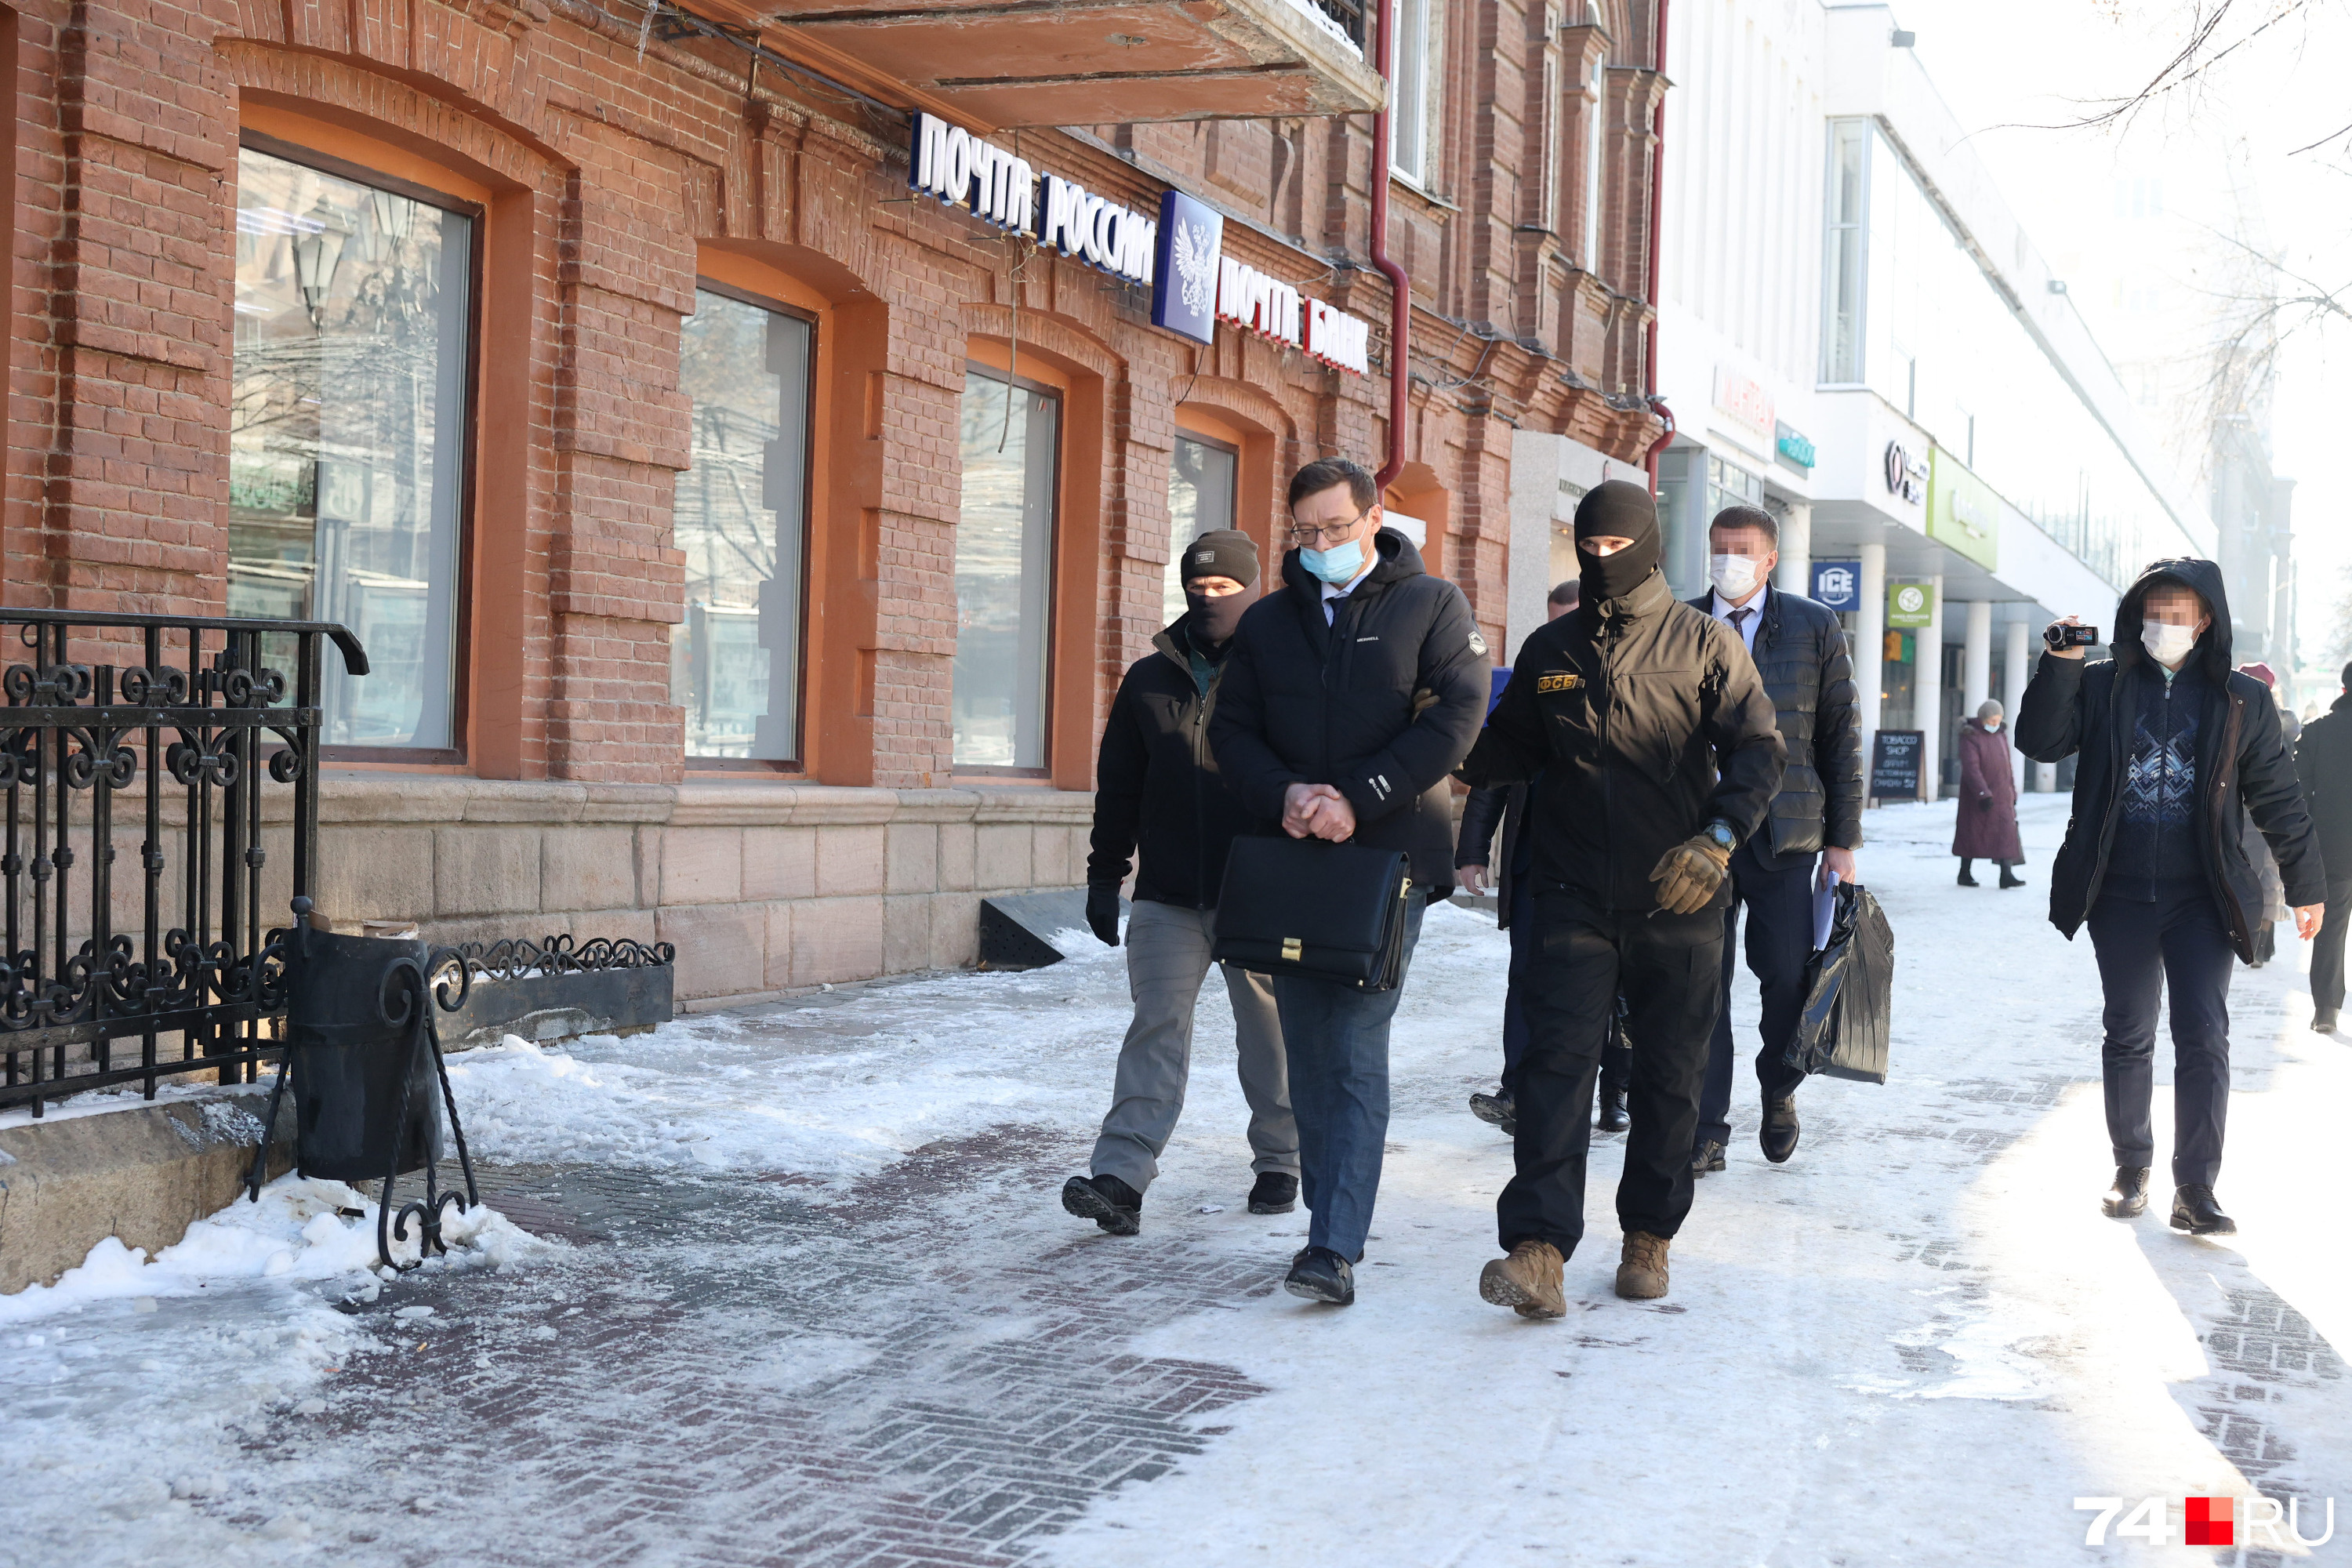 Заместителя министра здравоохранения задержали накануне. Силовики вывели его из здания на Кирова, 165 около полудня